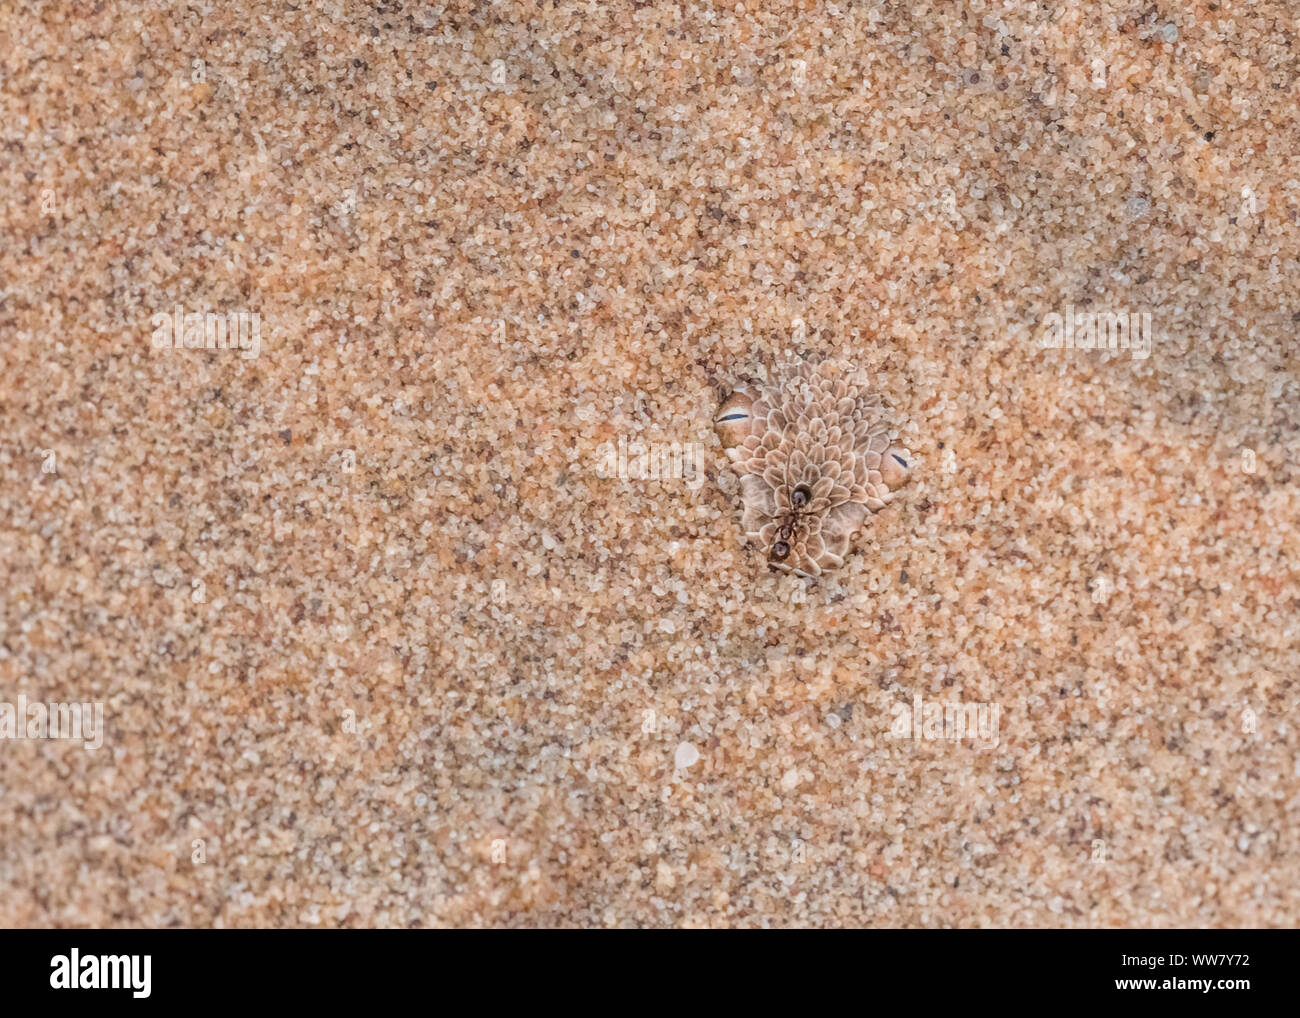 Du Peringuey adder, seulement les yeux visibles, creusé dans le sable chaud du désert Dorob en Namibie, à l'ant pas au courant sur la tête, Banque D'Images